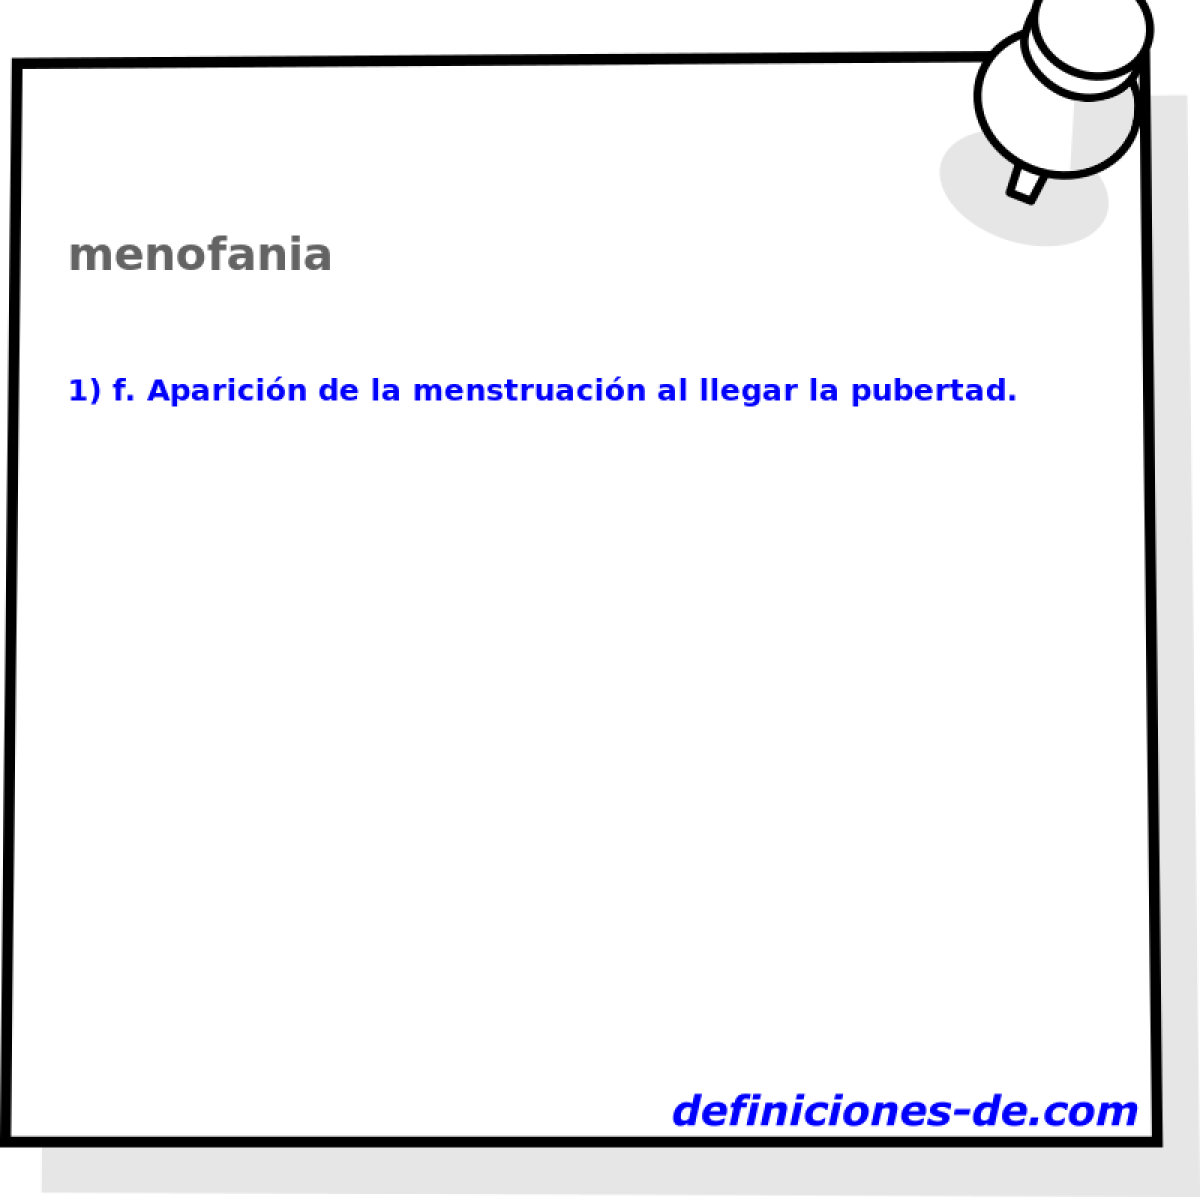 menofania 